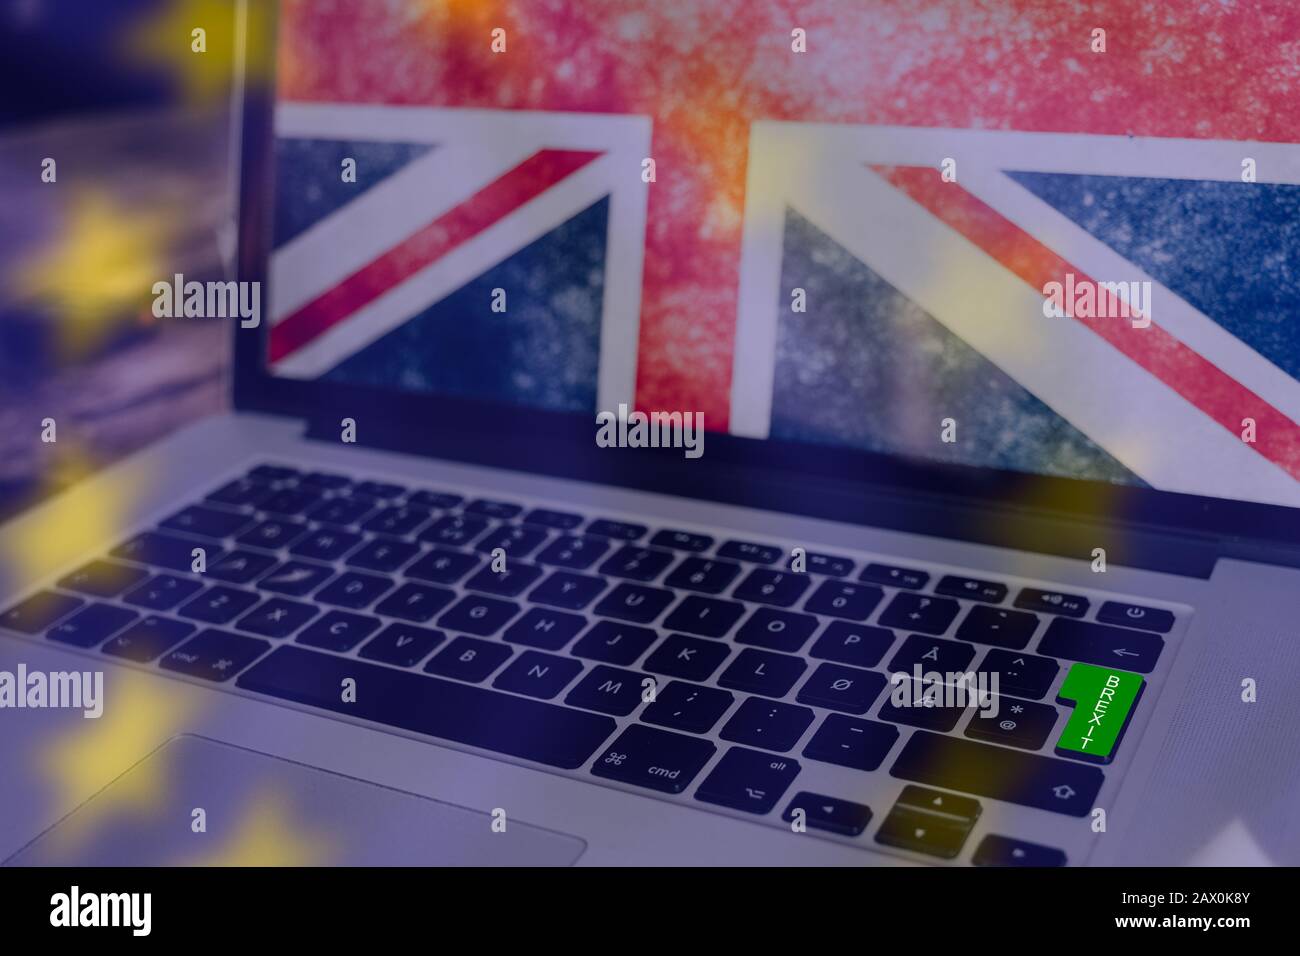 Grüne Taste am Computer für brexit, union Jack auf dem Bildschirm und die Sterne von der EU-Flagge als transparente Überlagerung Stockfoto